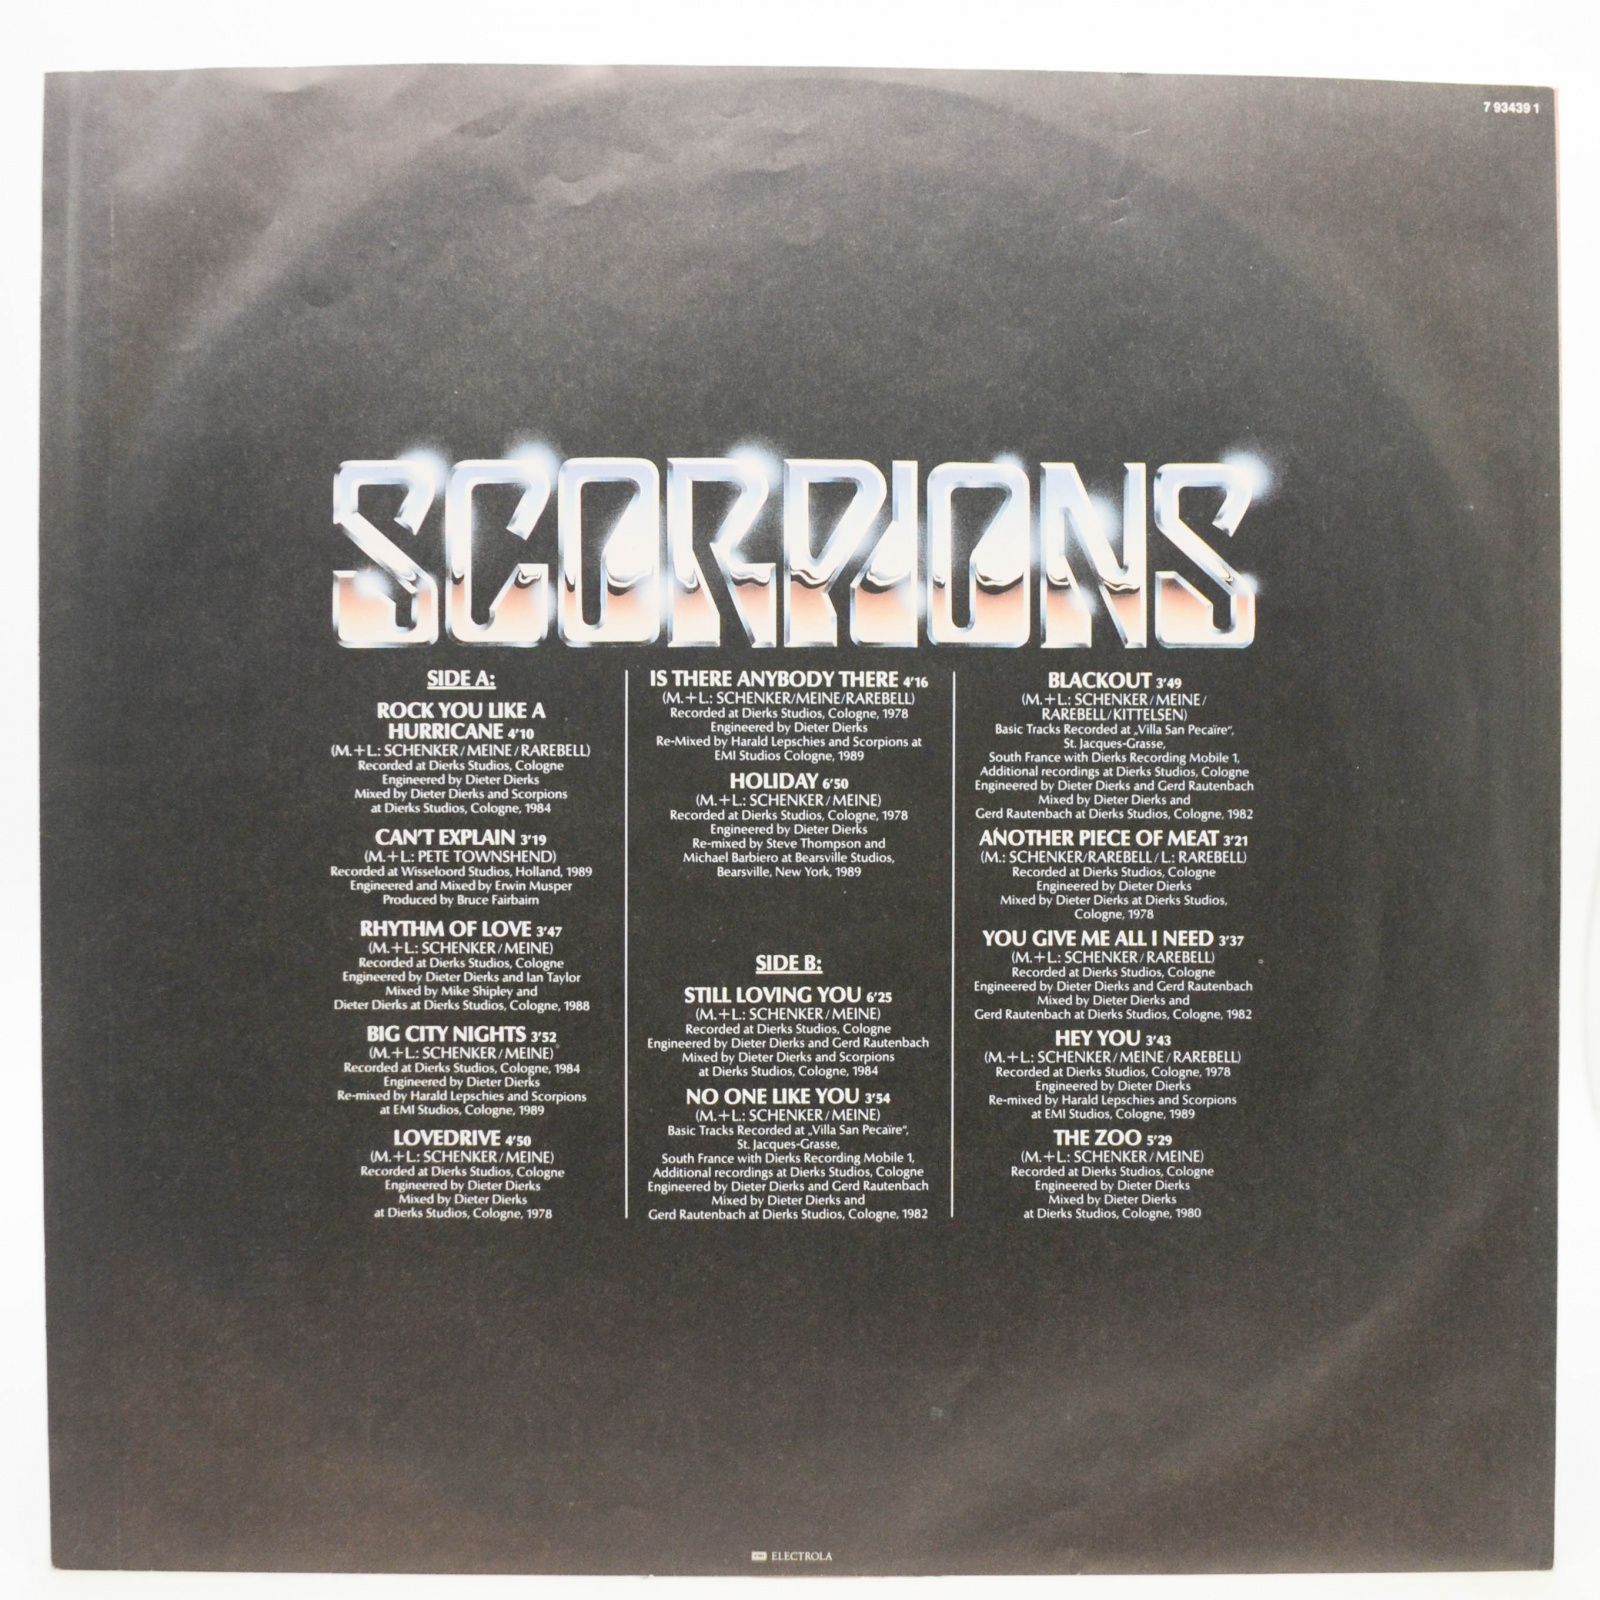 Scorpions — Best Of Rockers N' Ballads, 1989